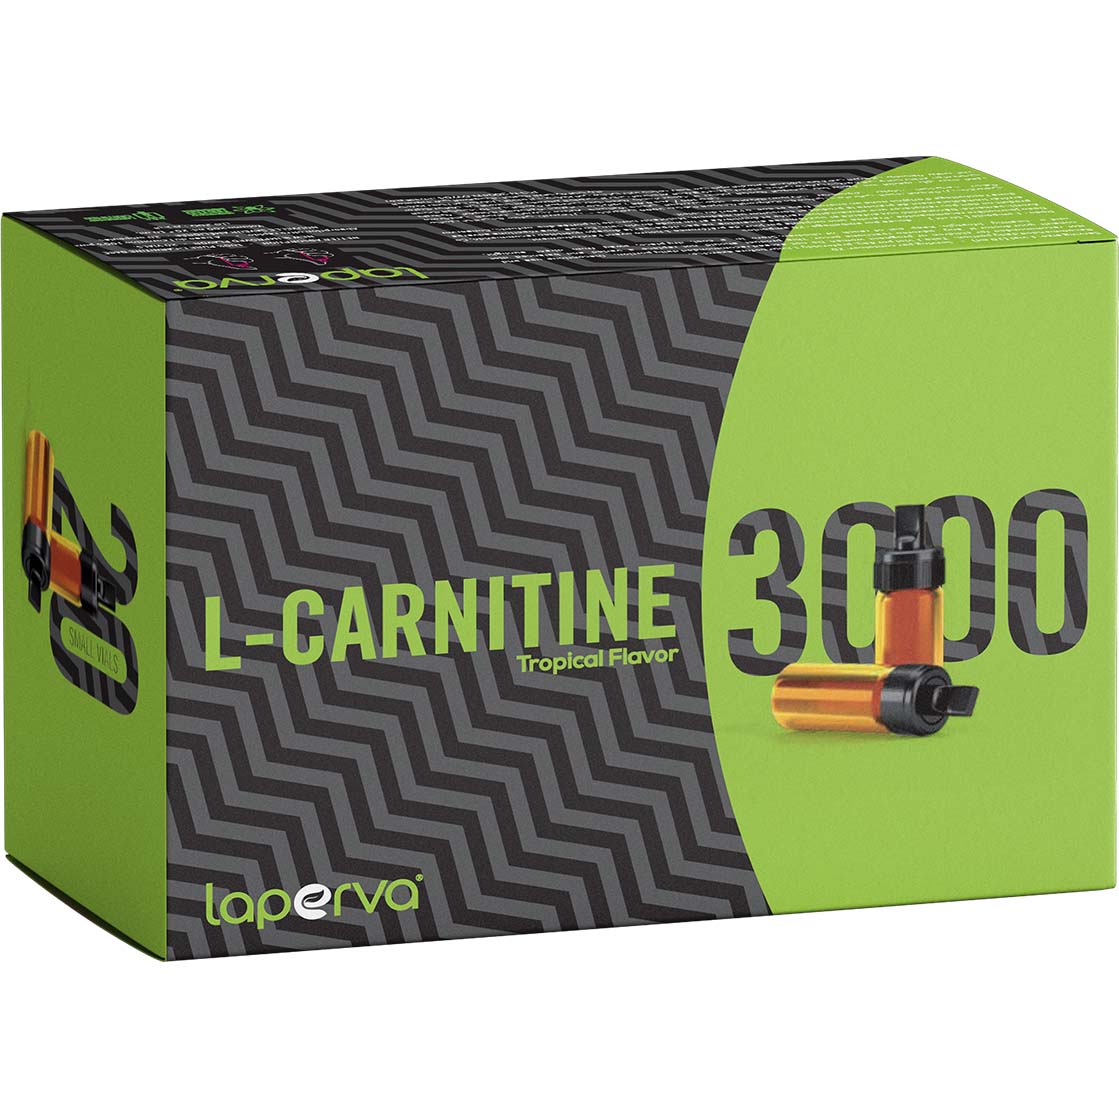 Laperva l-Carnitine 3000 20 Vials Tropical